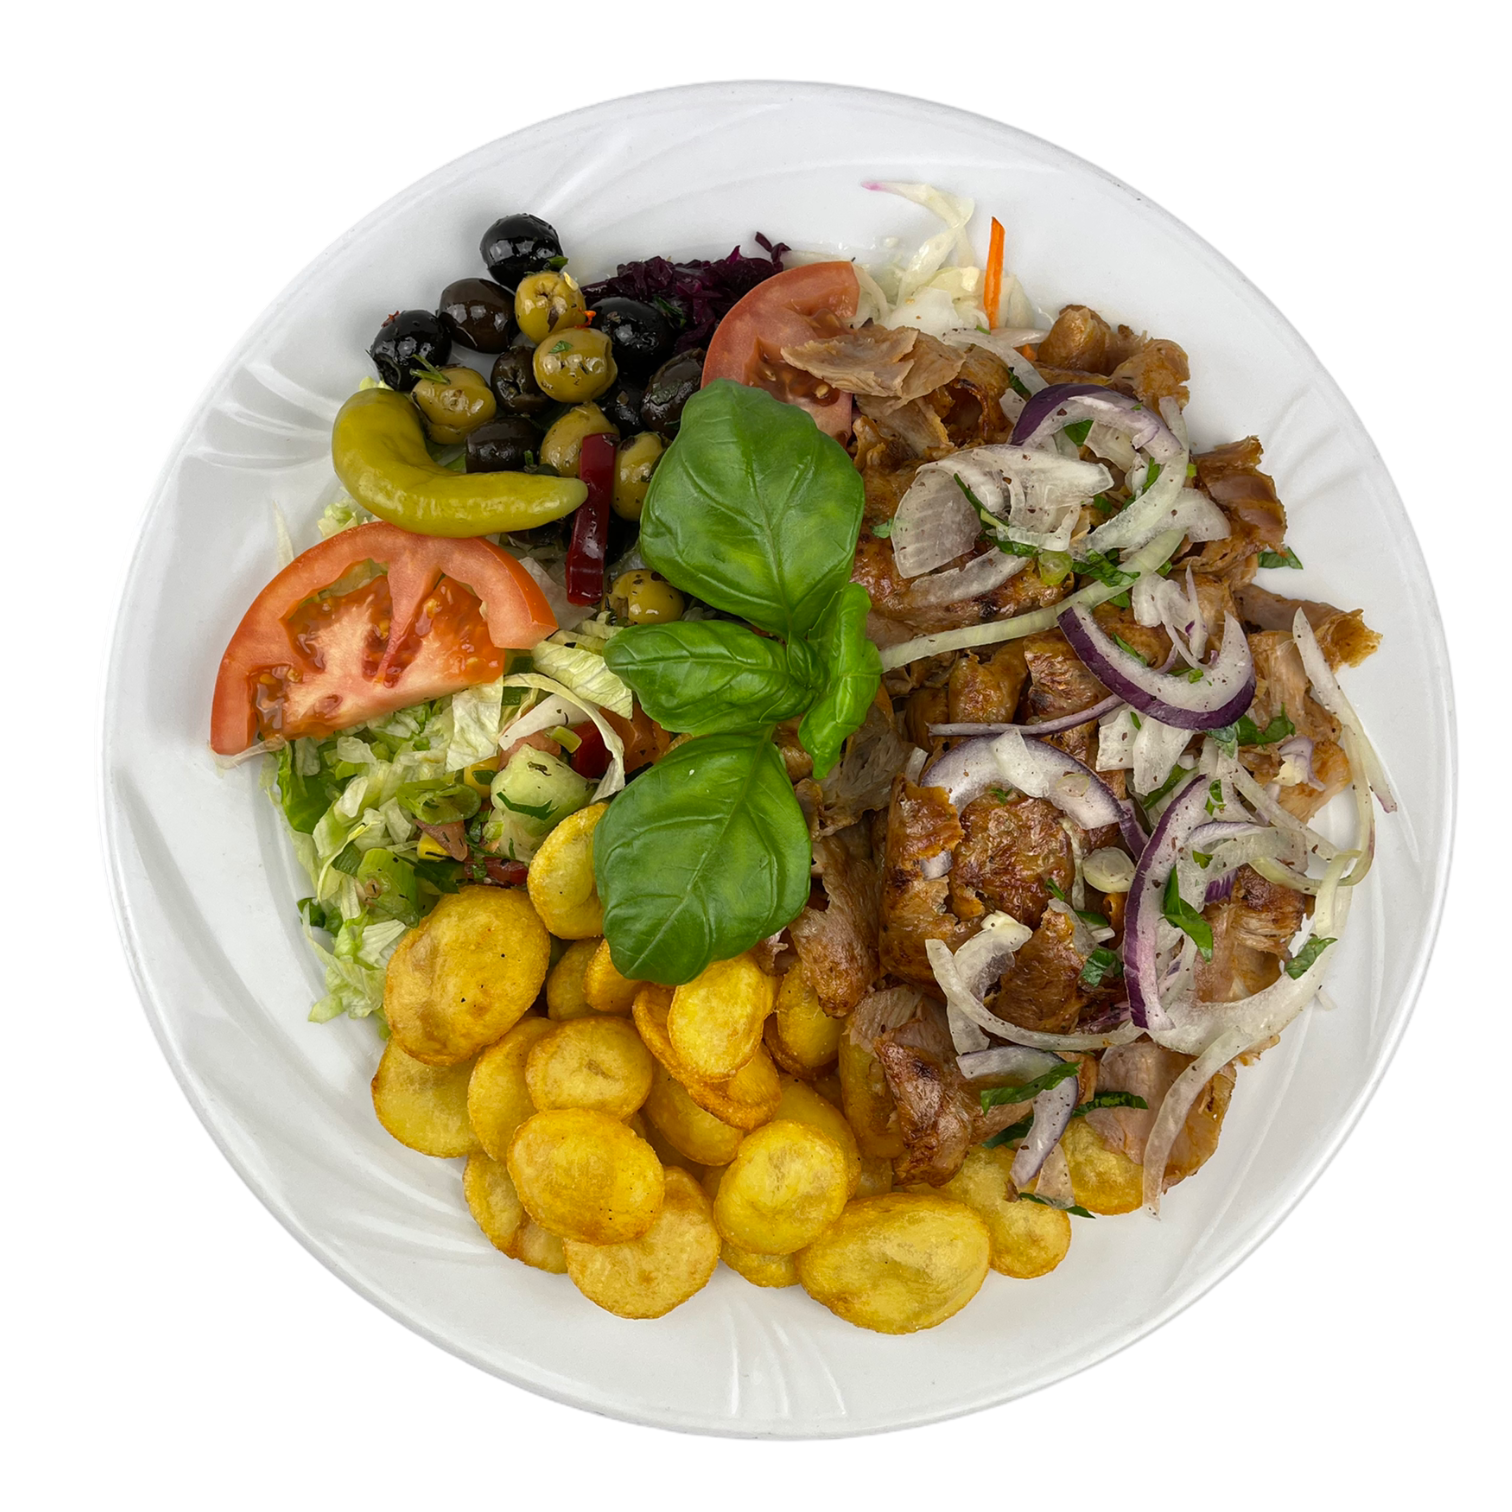 Drehspieß Teller mit Putenfleisch, Knoblauchkartoffeln, Salat und Soße